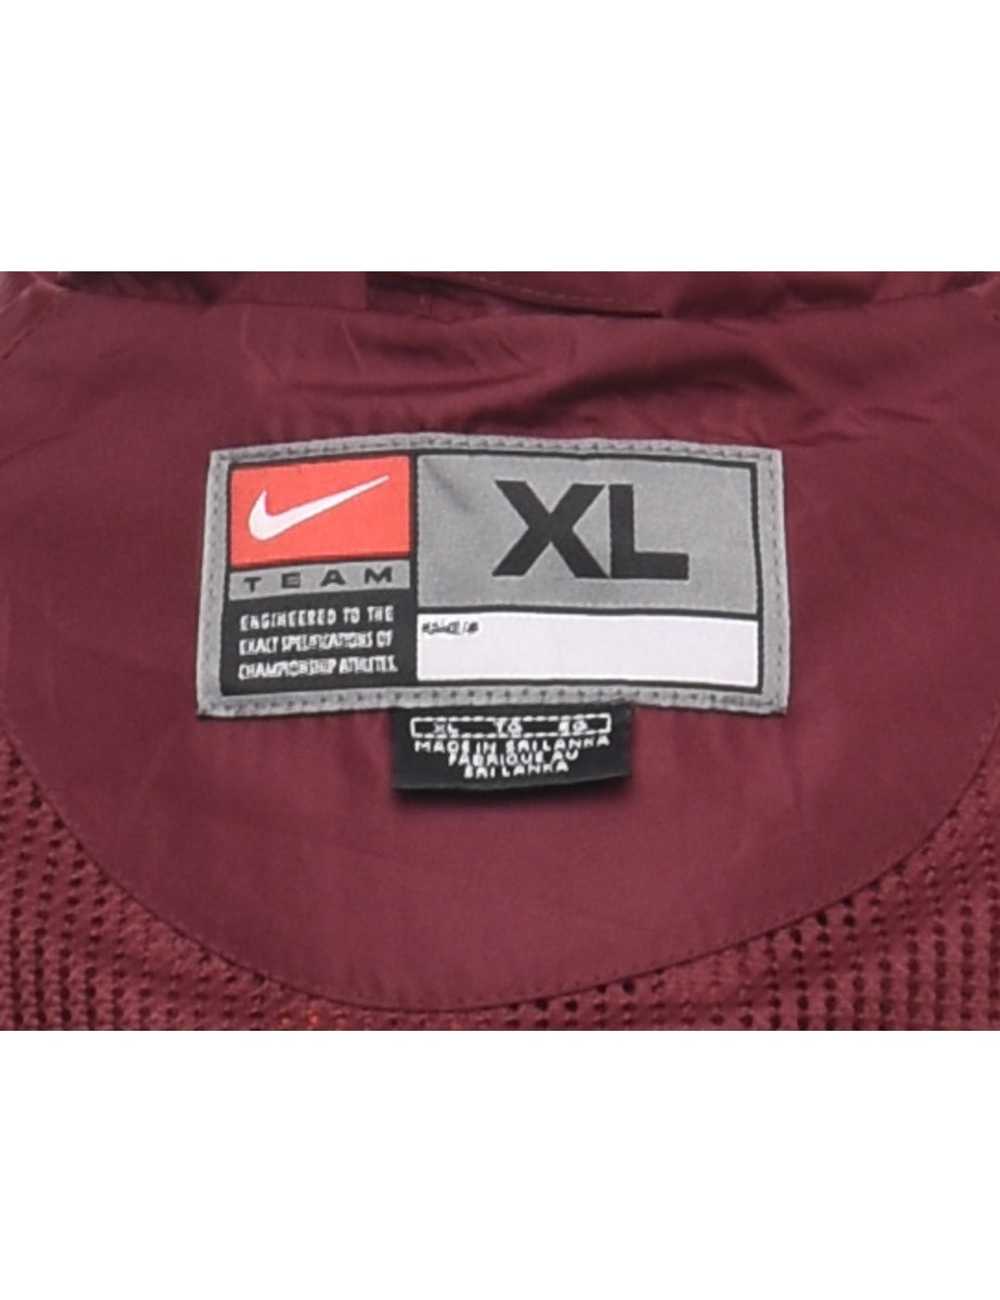 Nike Maroon & Orange Jacket - XL - image 4